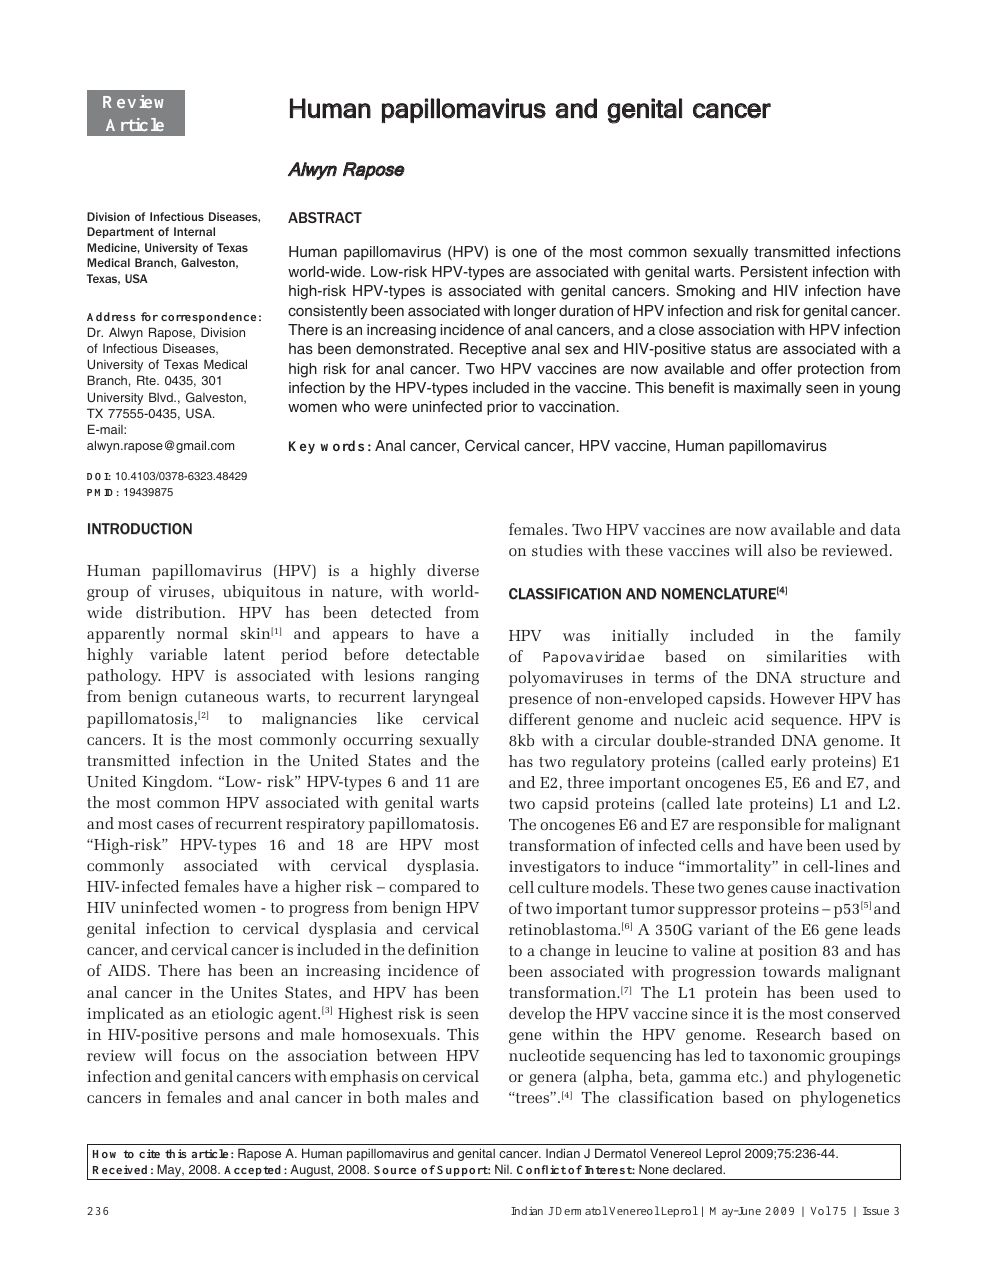 Human papillomavirus articles. Anida-Maria Babtan - Google Scholar Citations